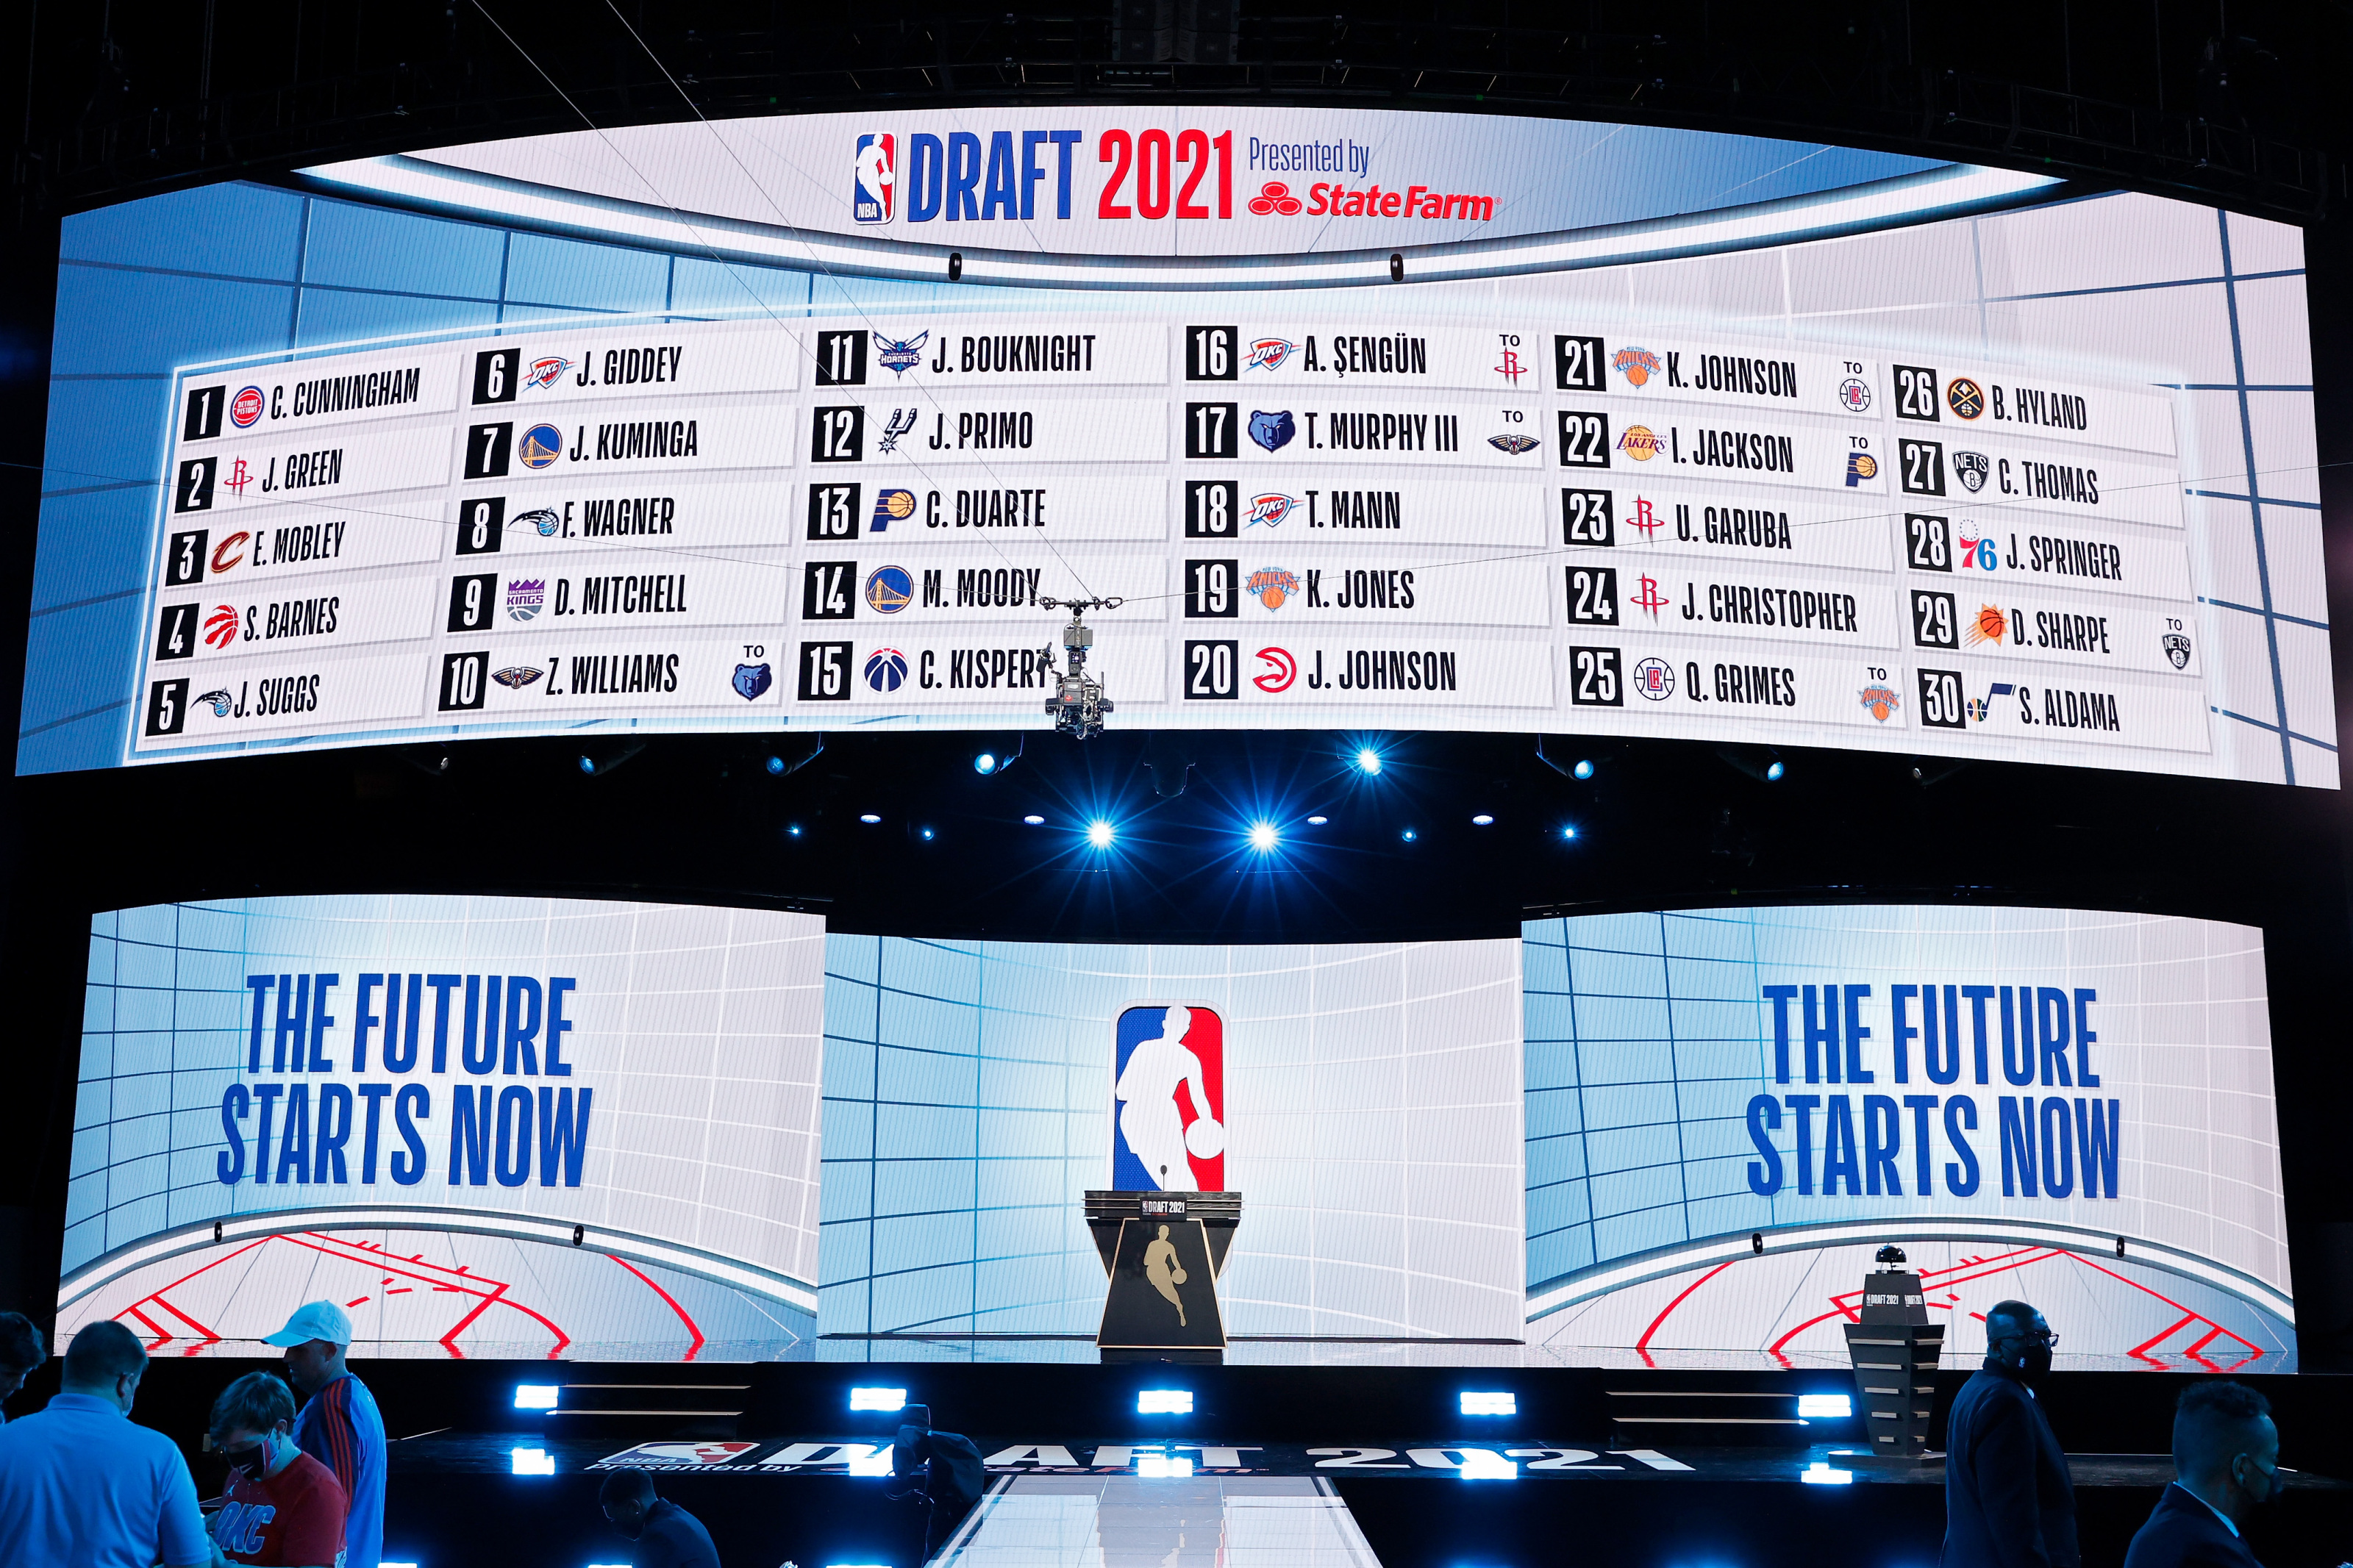 Redrafting the 2021 NBA Draft: Rockets pick Evan Mobley at No. 2